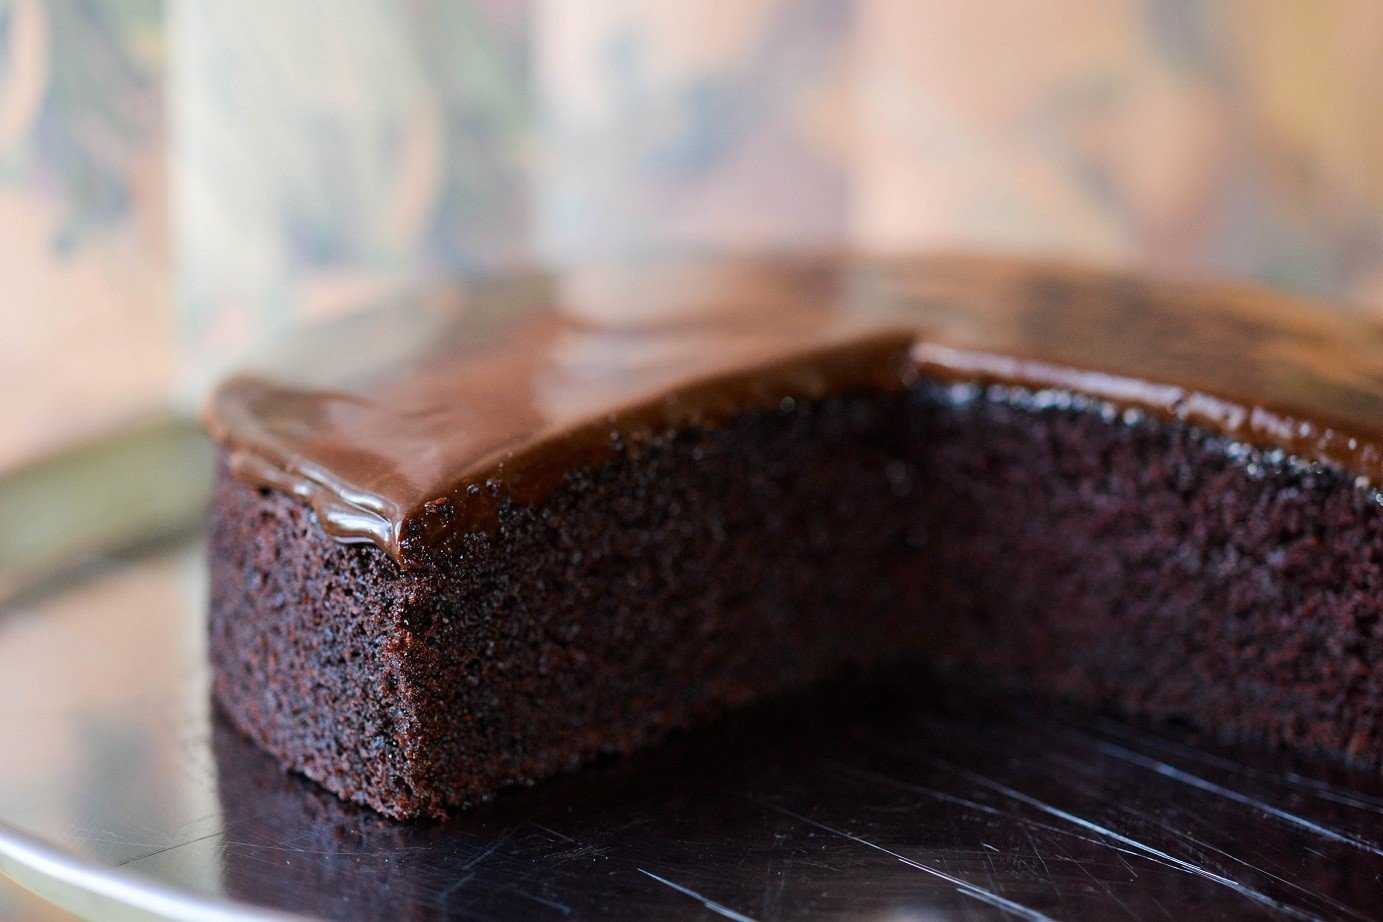 Шоколадный пирог - как приготовить в домашних условиях по рецептам с фото в духовке и мультиварке